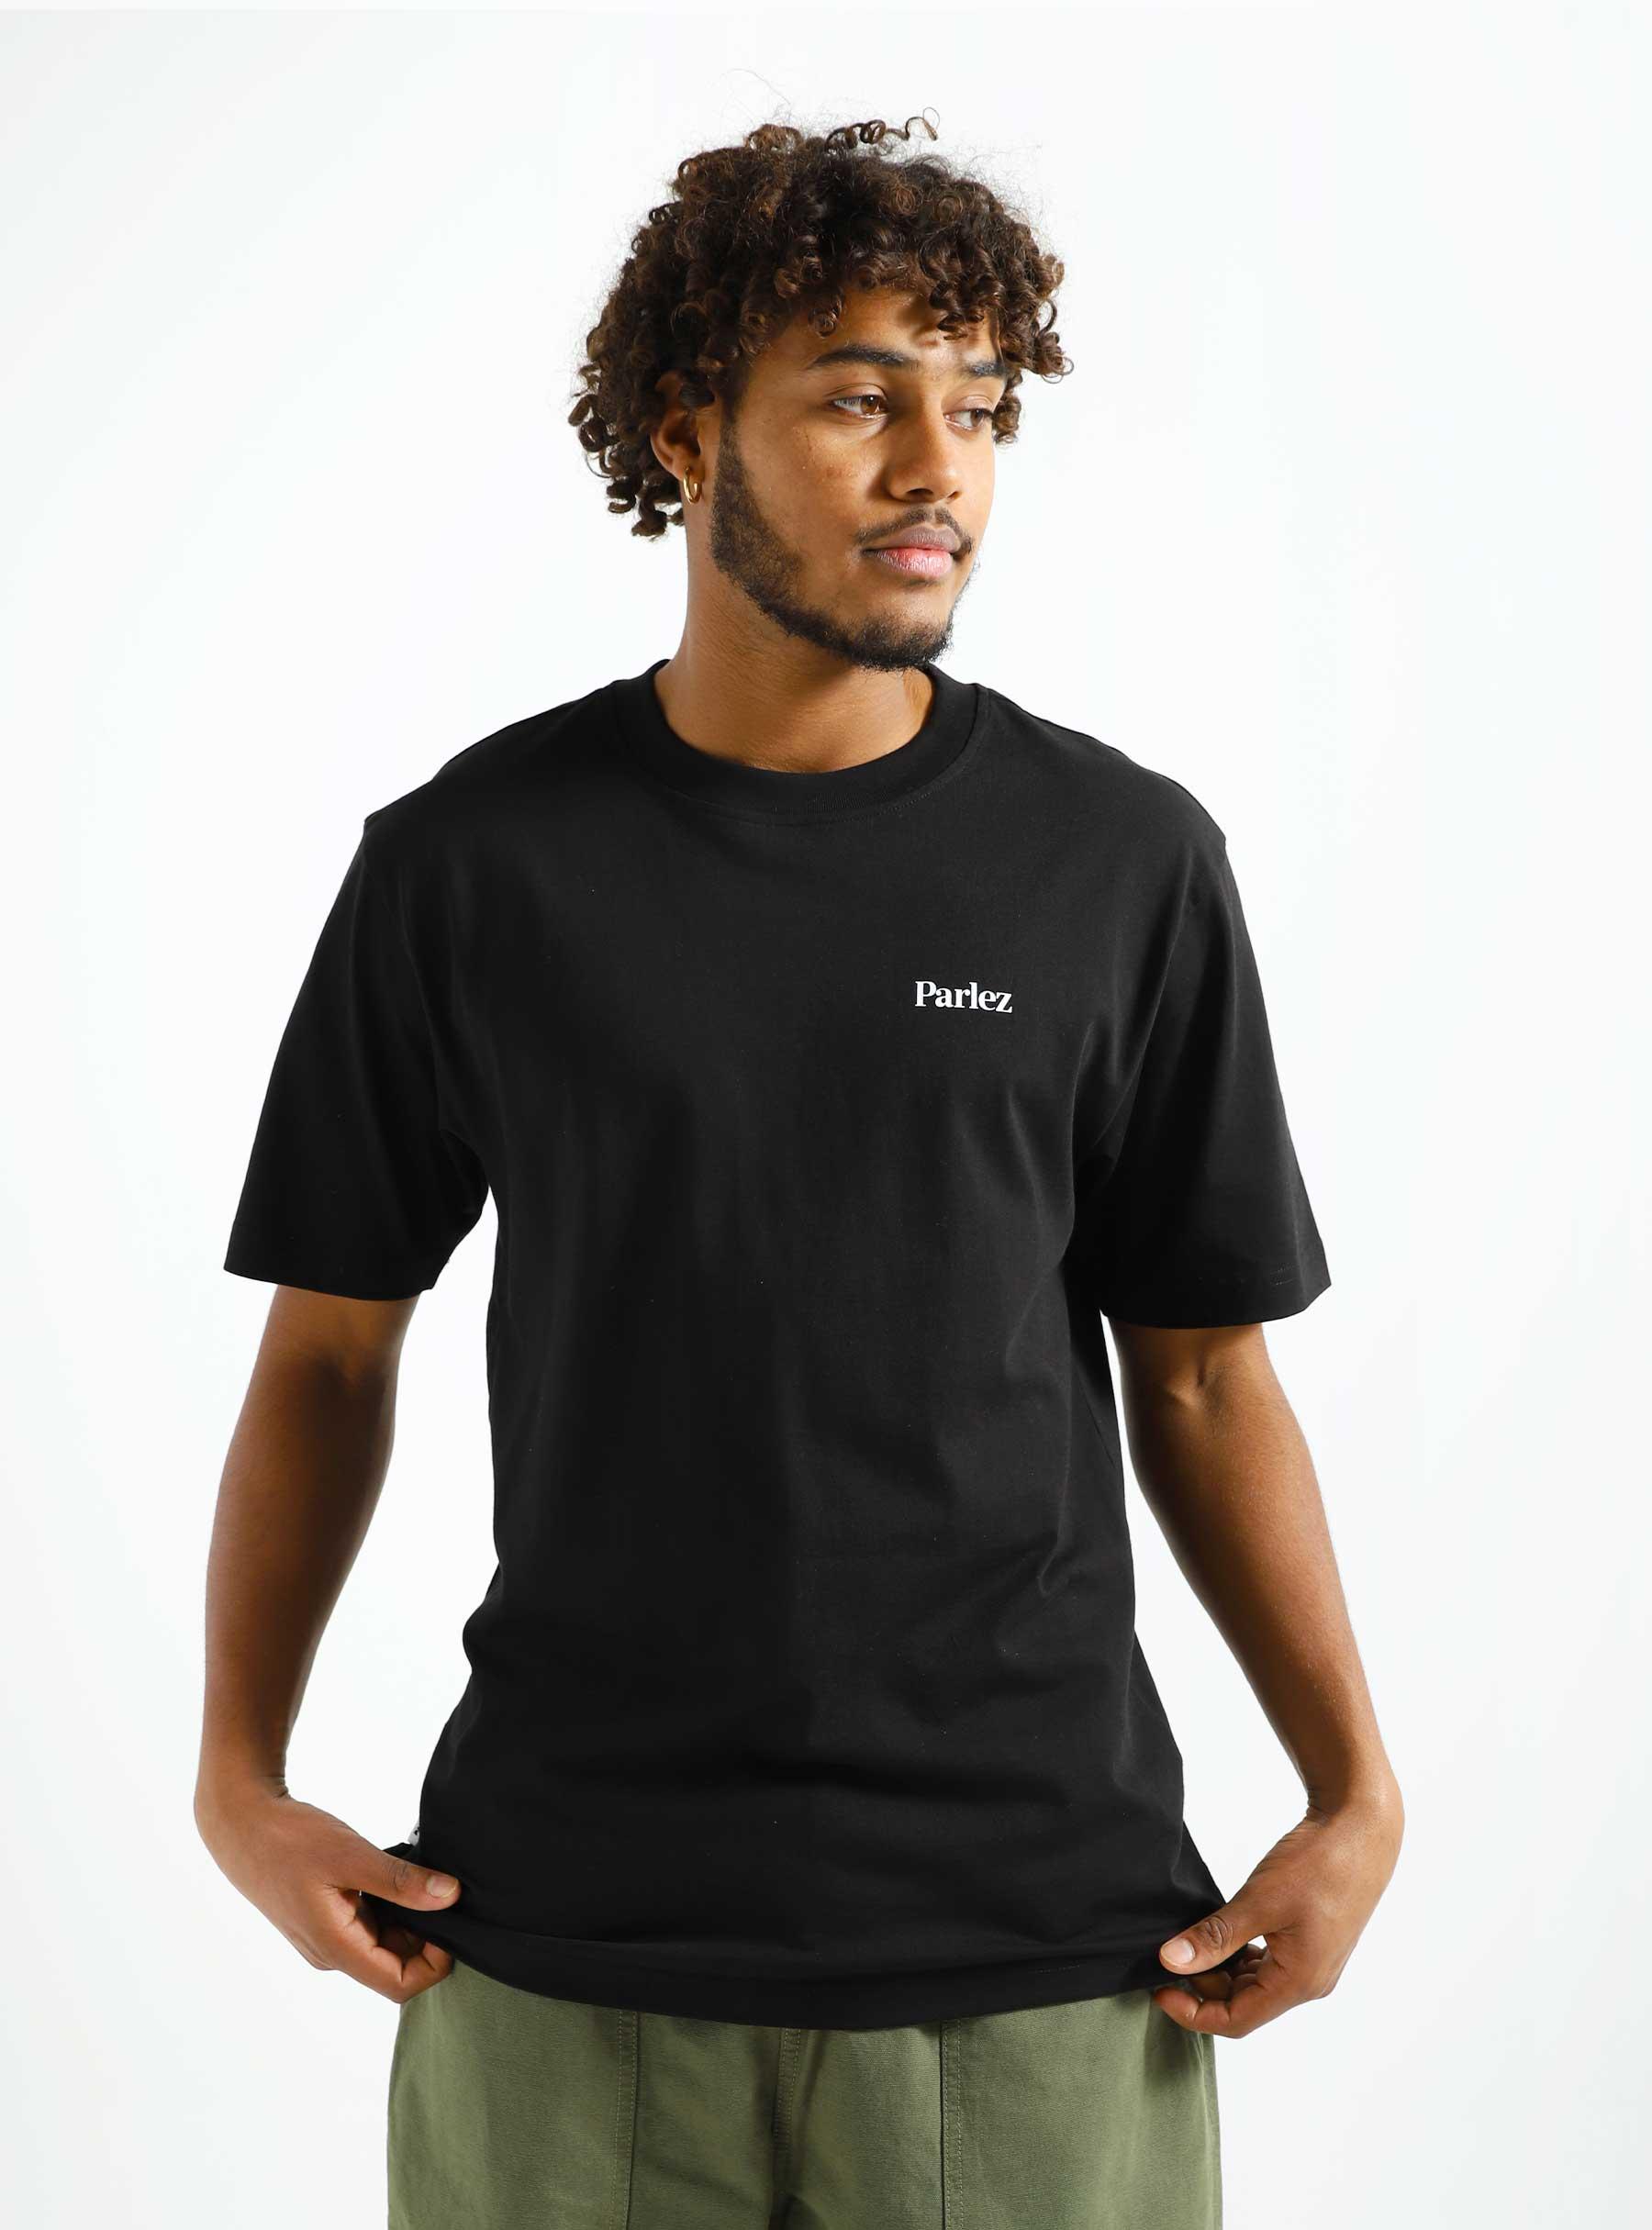 Sloop T-shirt Black parhw23049